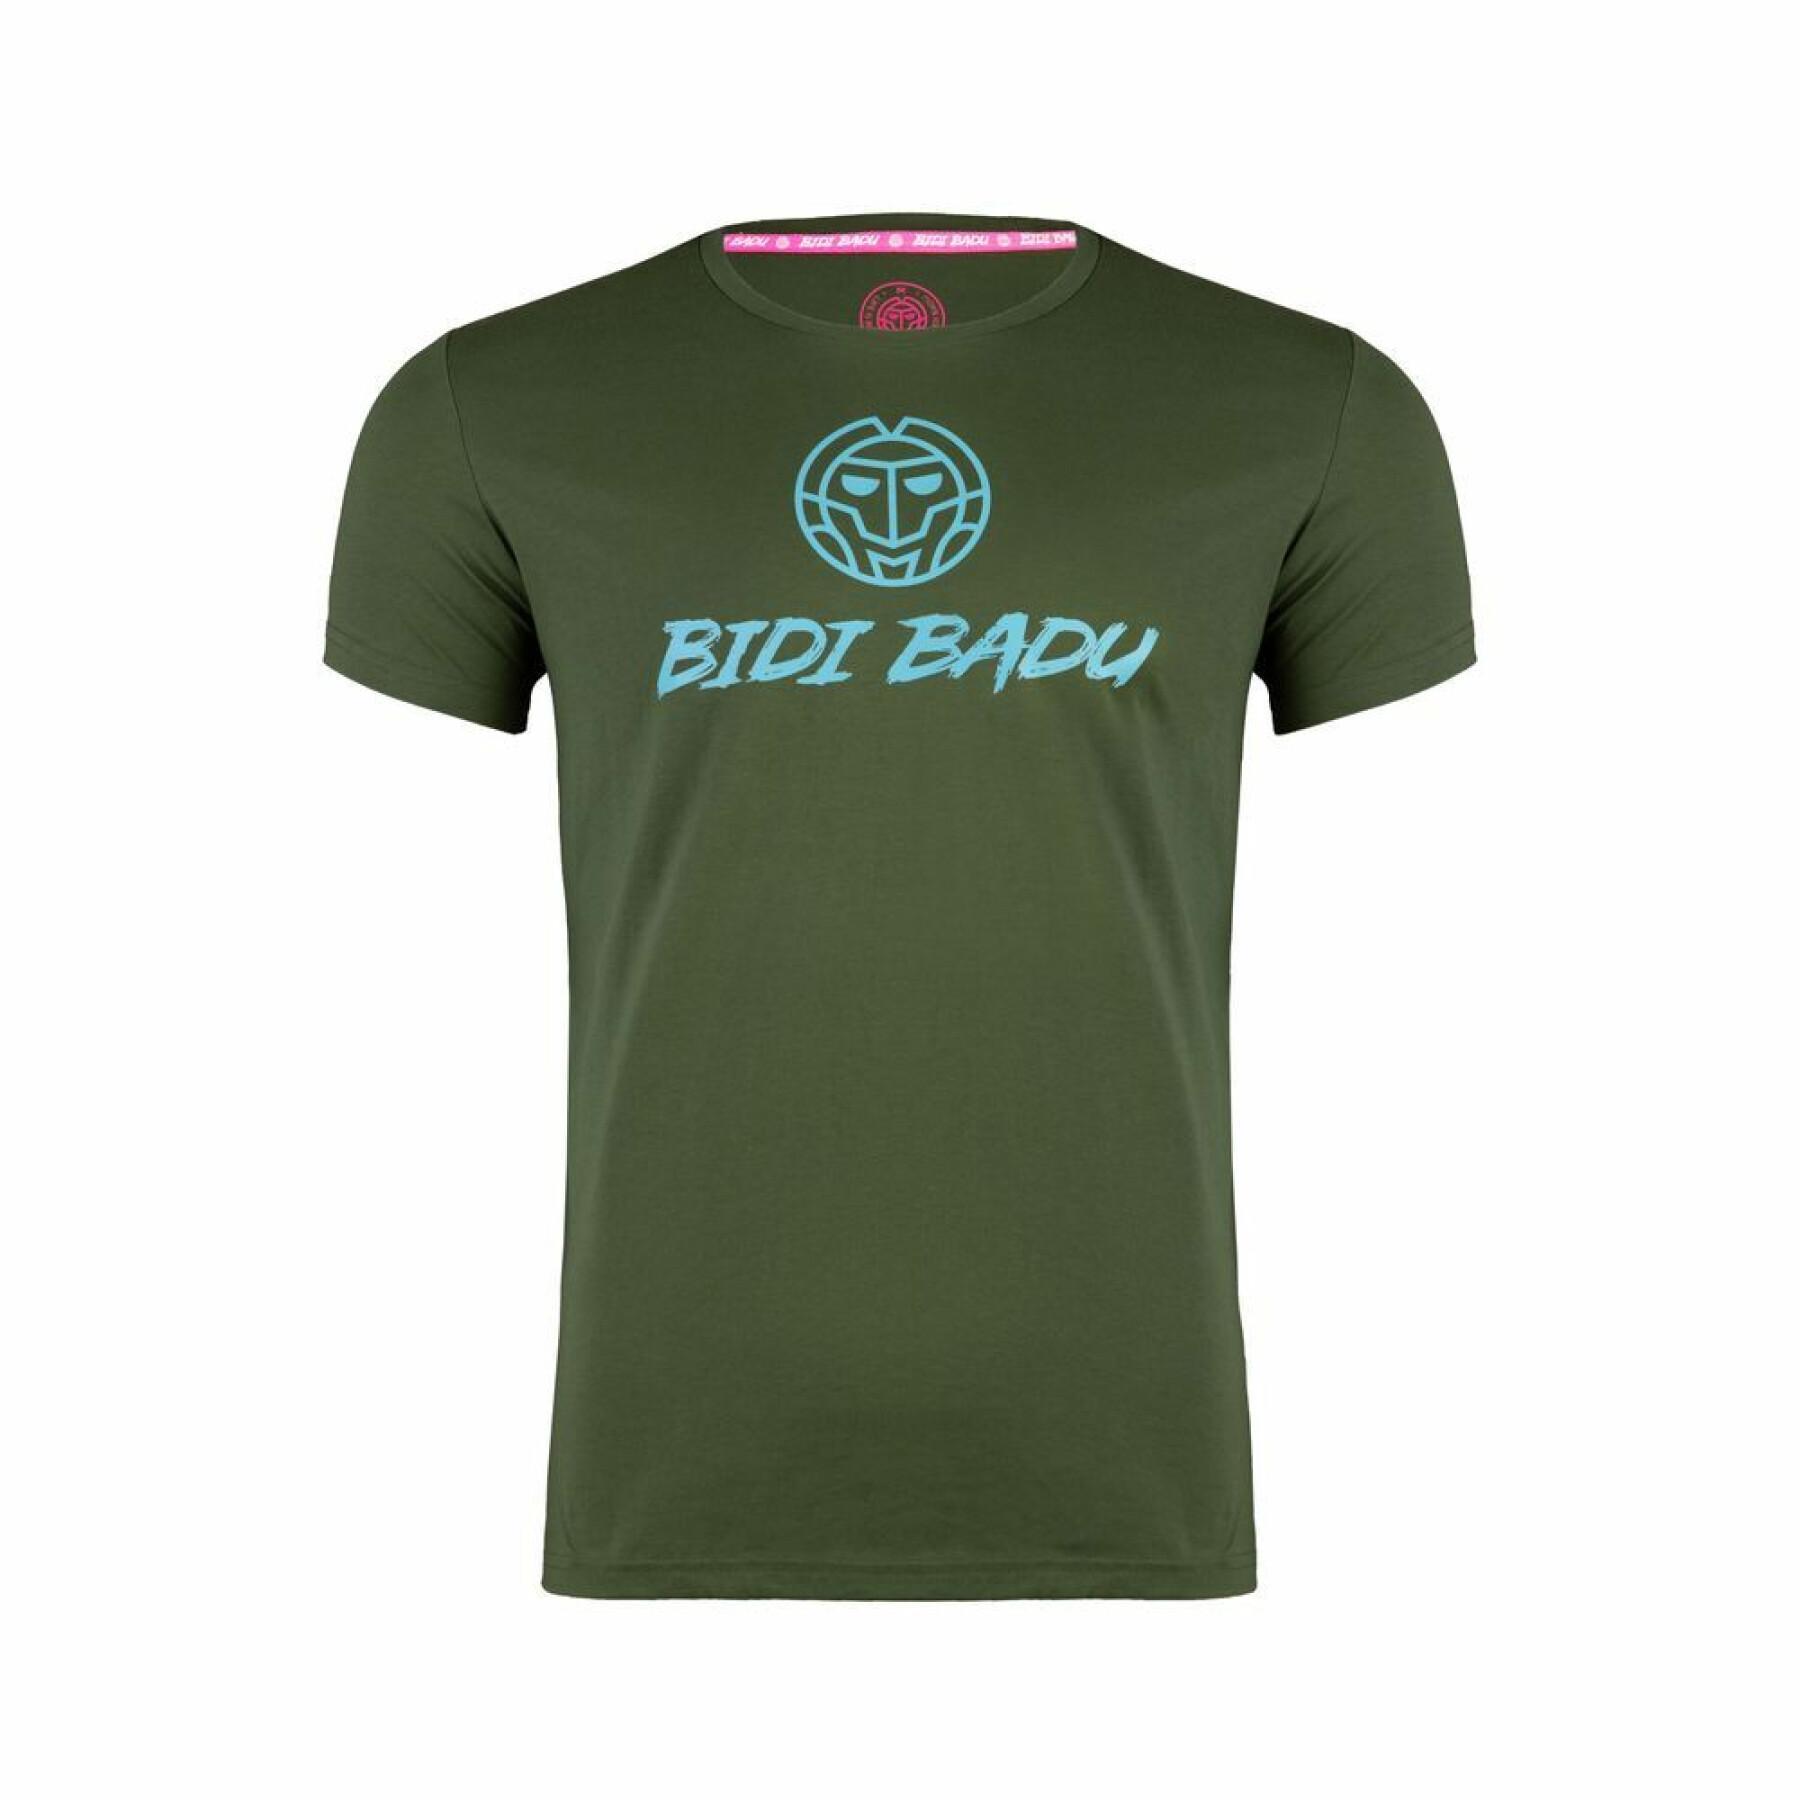 Kinder-T-shirt Bidi Badu Caven Basic Logo